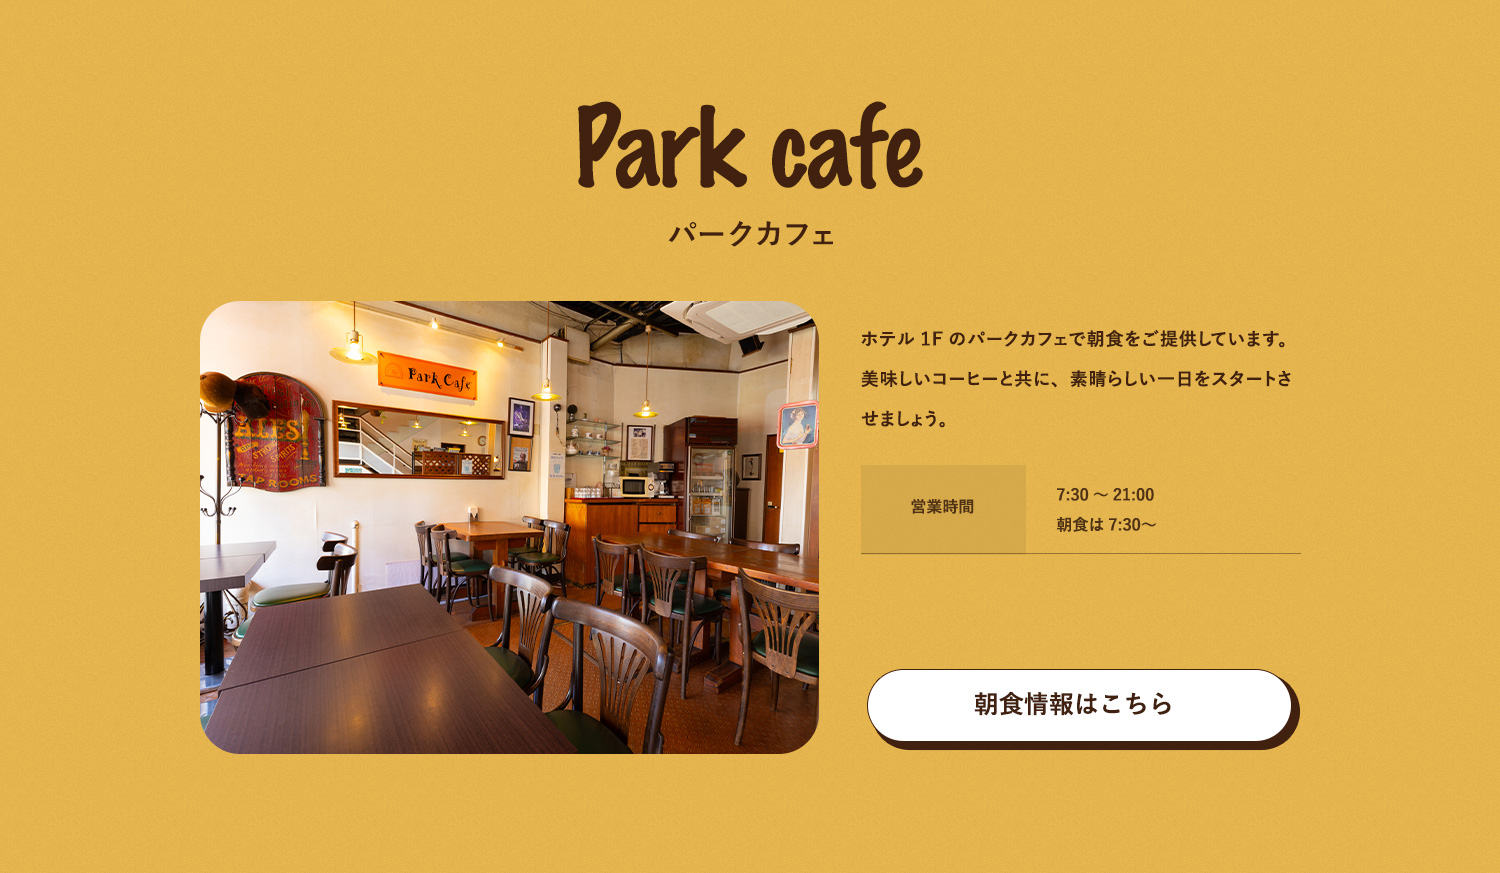 パークカフェ ホテル1Fのパークカフェで朝食をご提供しています。美味しいコーヒーと共に、素晴らしい一日をスタートさせましょう。営業時間 7:30～21:00 朝食は7:30〜